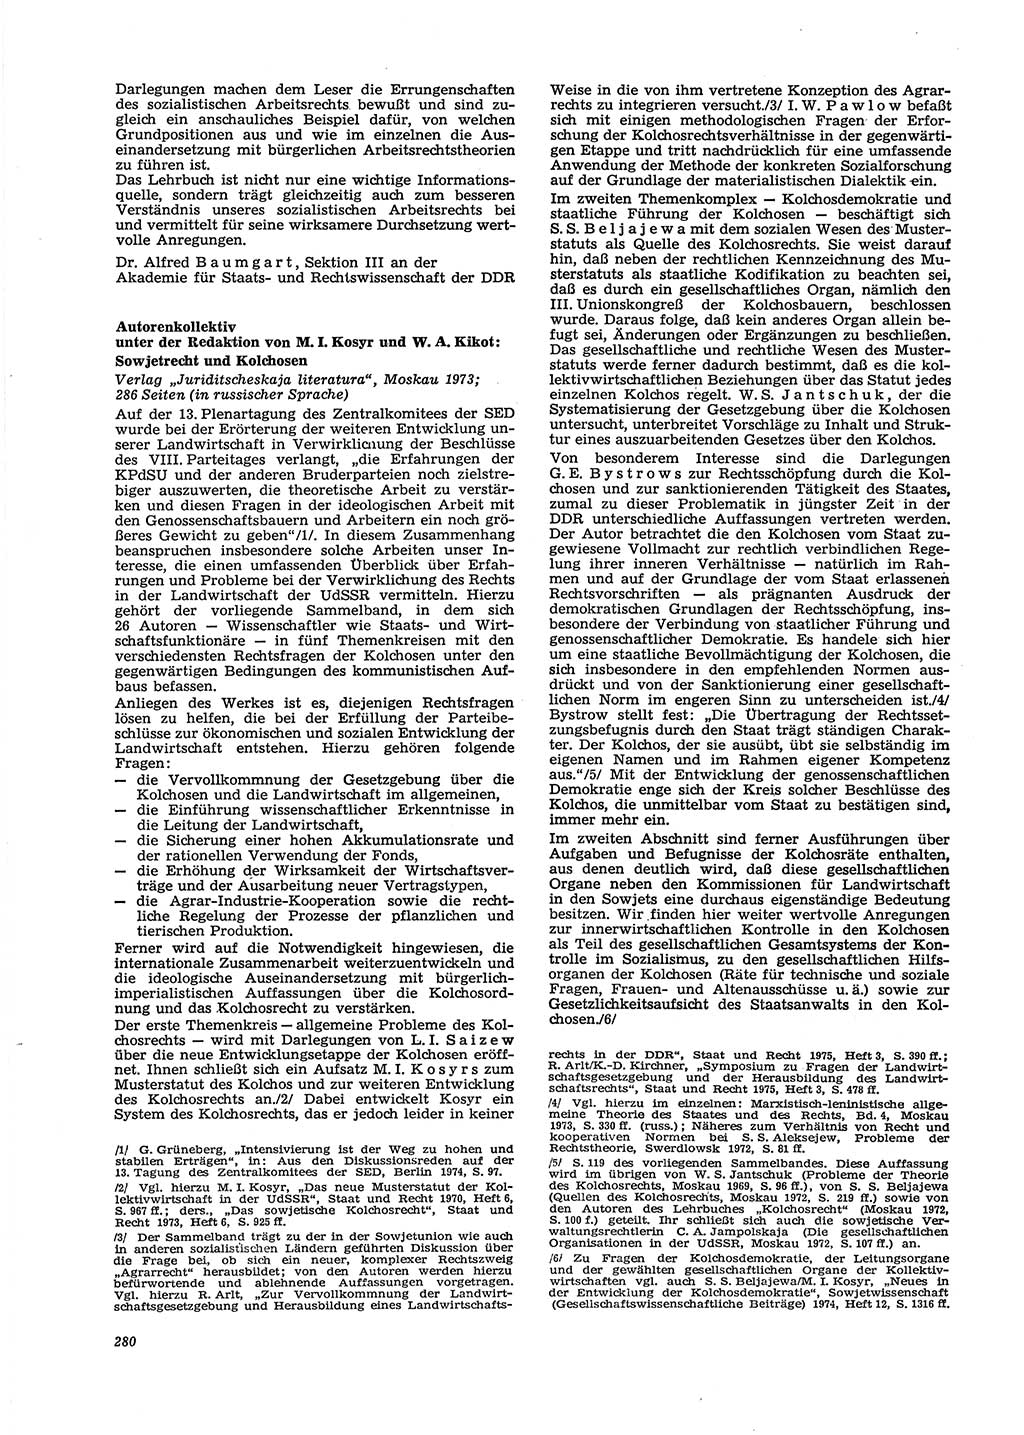 Neue Justiz (NJ), Zeitschrift für Recht und Rechtswissenschaft [Deutsche Demokratische Republik (DDR)], 29. Jahrgang 1975, Seite 280 (NJ DDR 1975, S. 280)